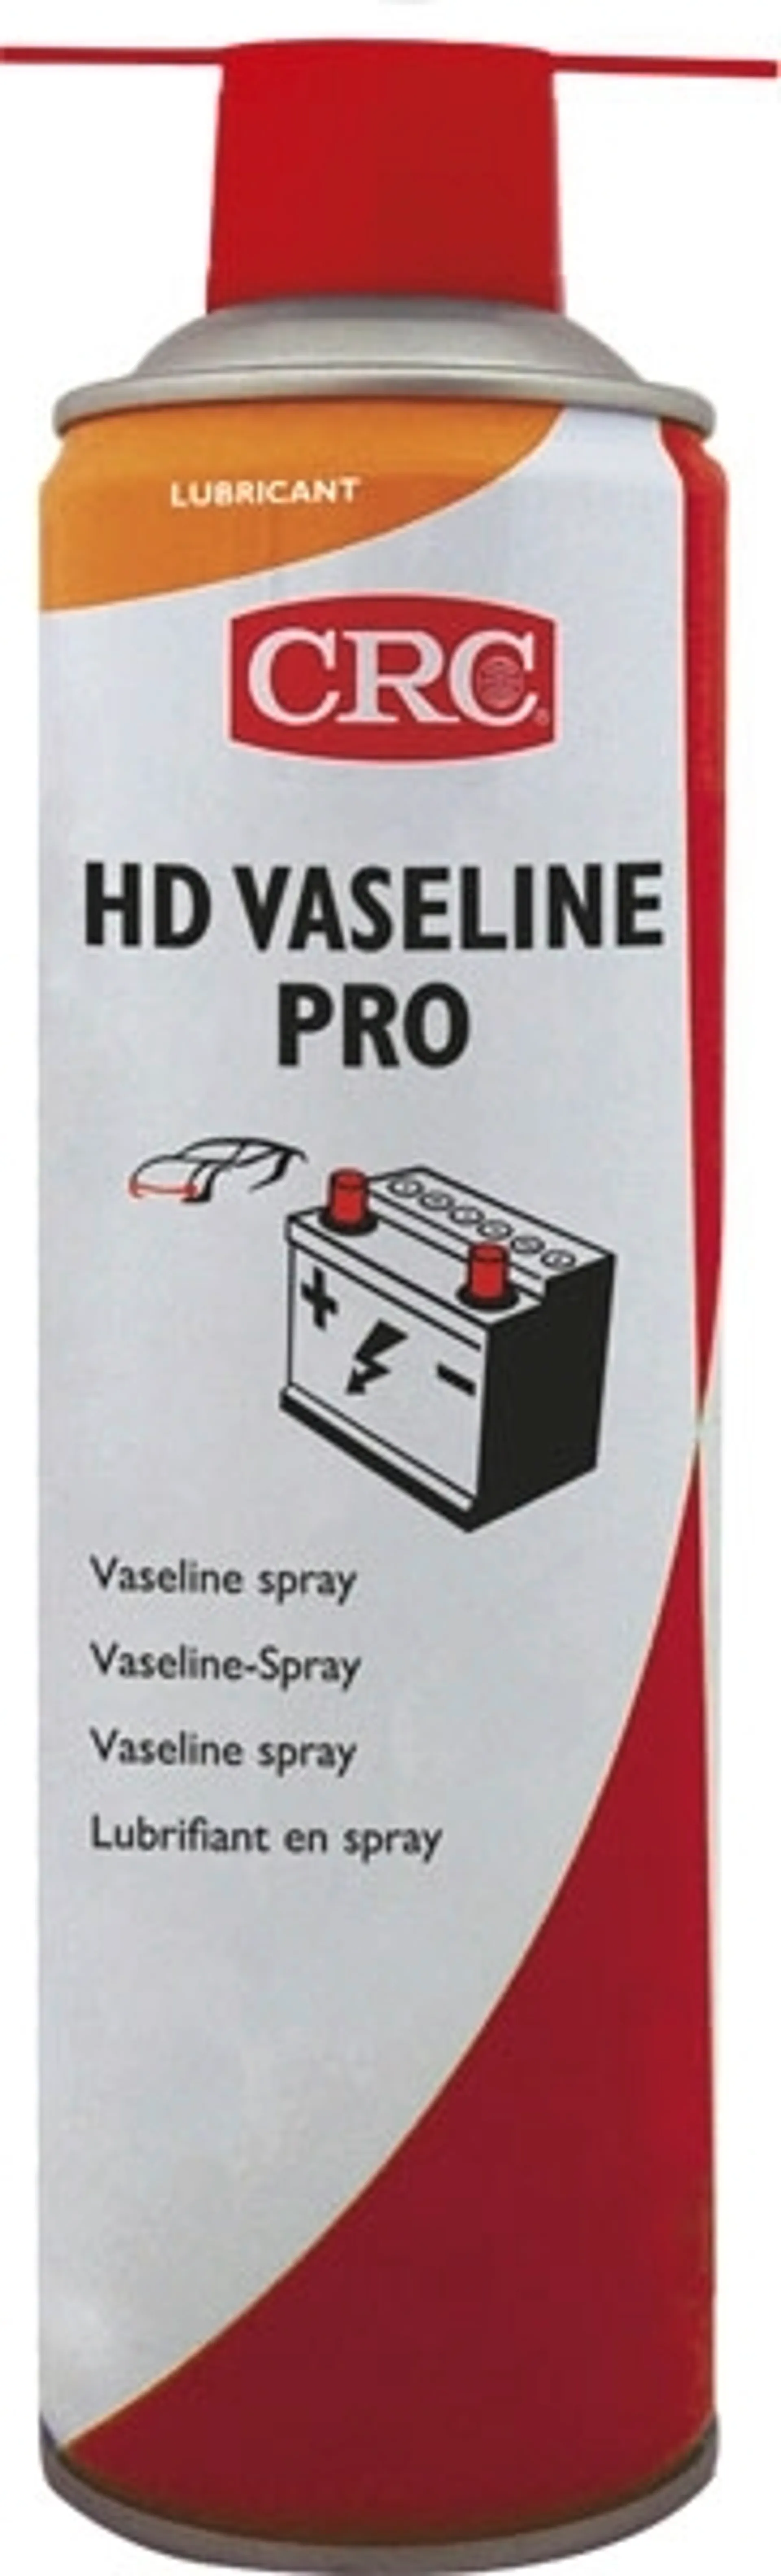 CRC HD Vaseline Pro vaseliinispray